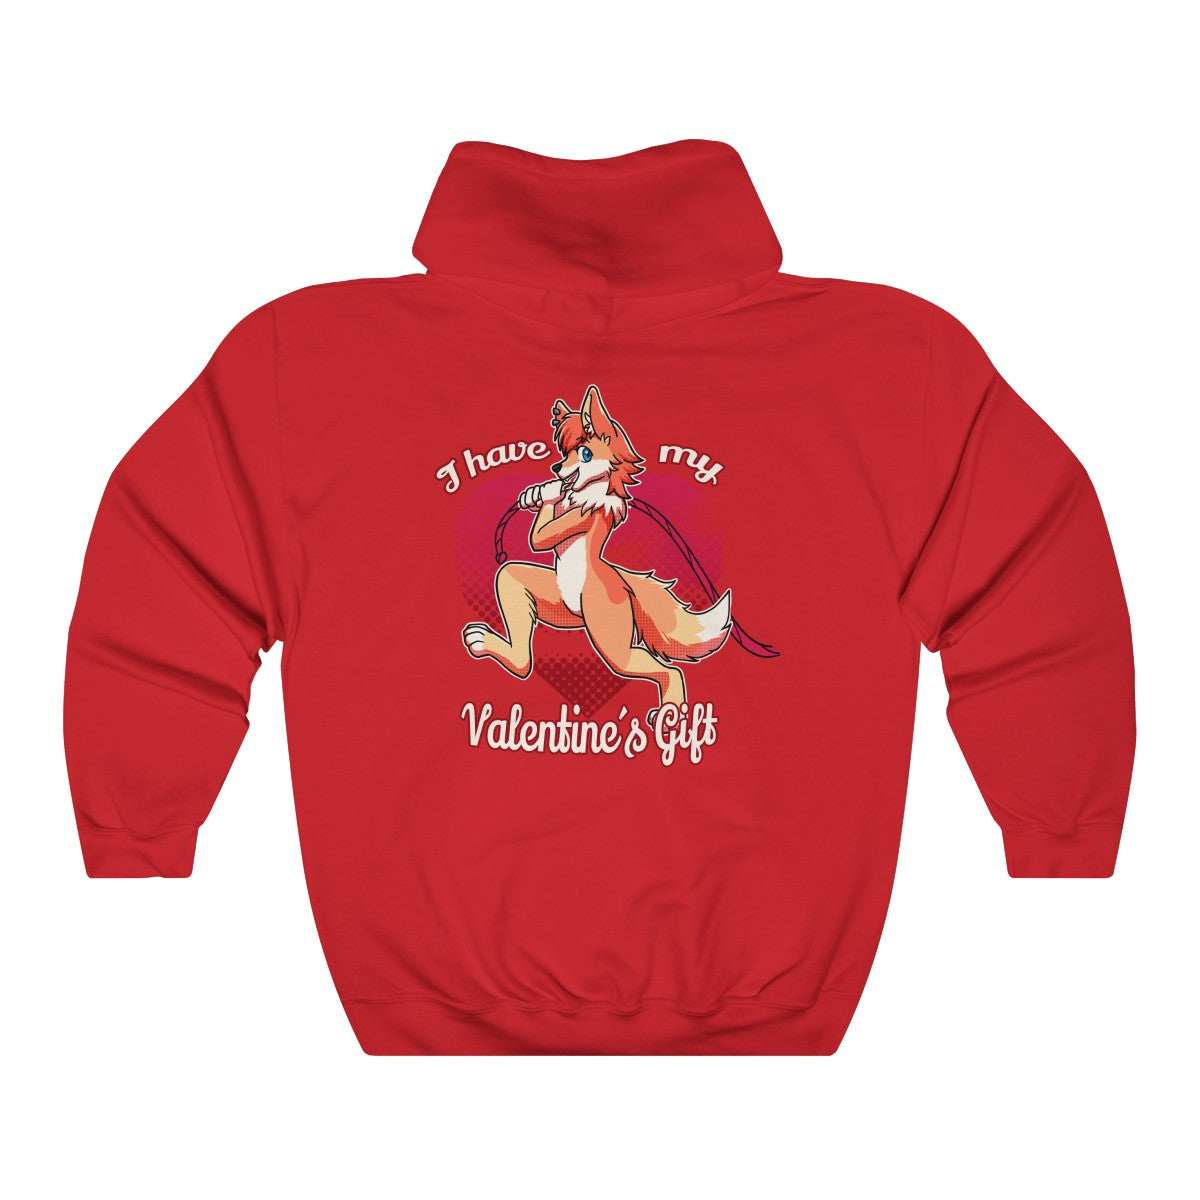 Valentine's Gift - Hoodie Hoodie Artworktee Red S 